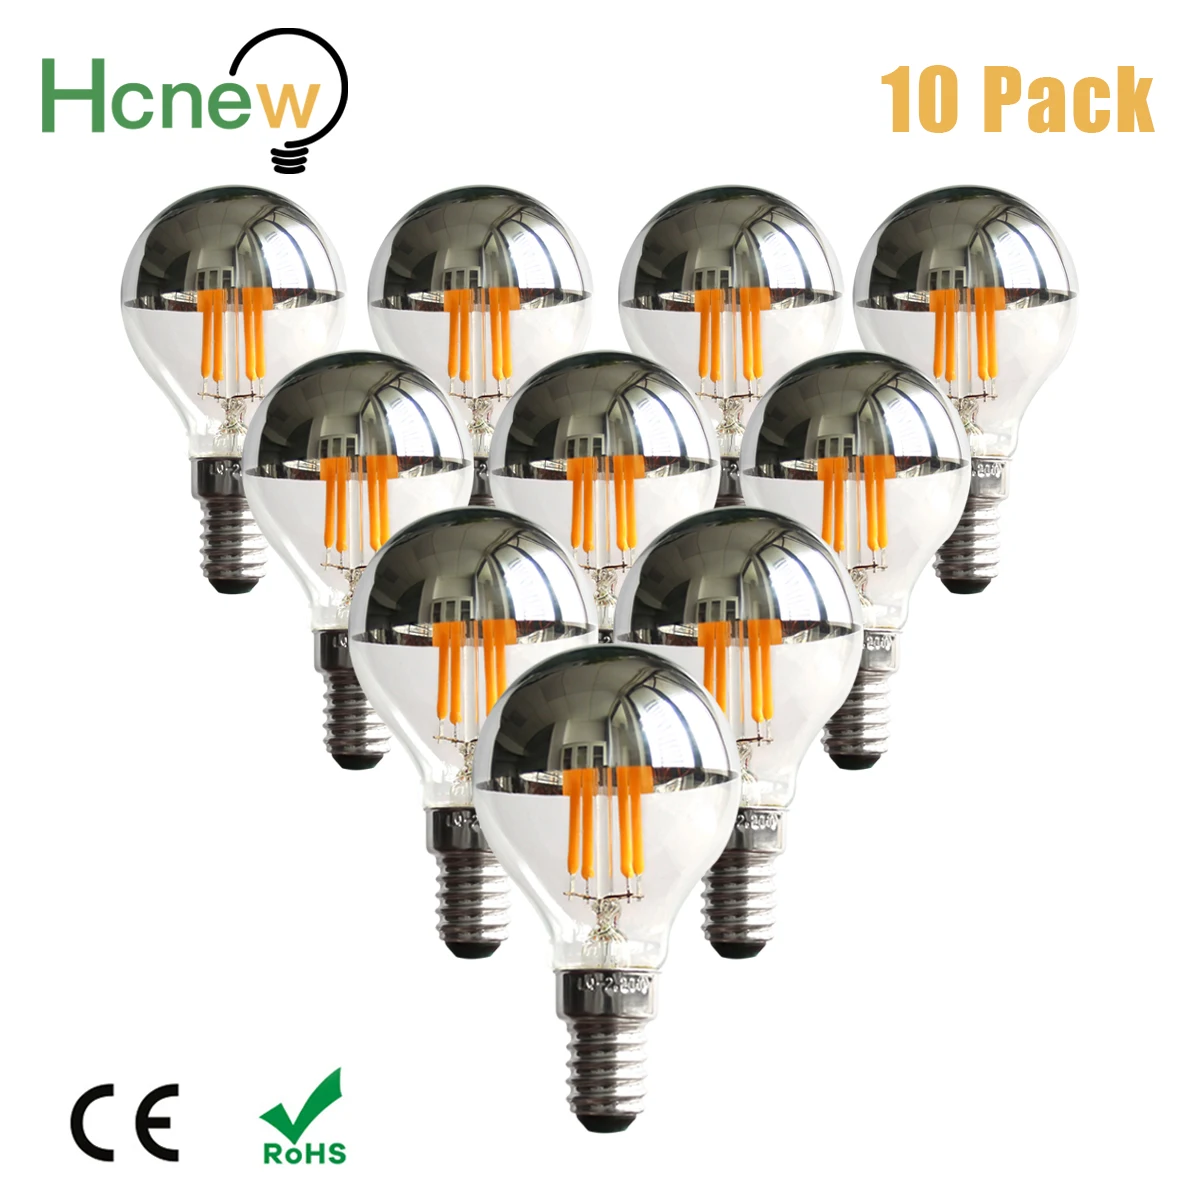 H1 LED Daytime Running Light Bulb with Focusing Lens - 350 Lumens - Cool  White